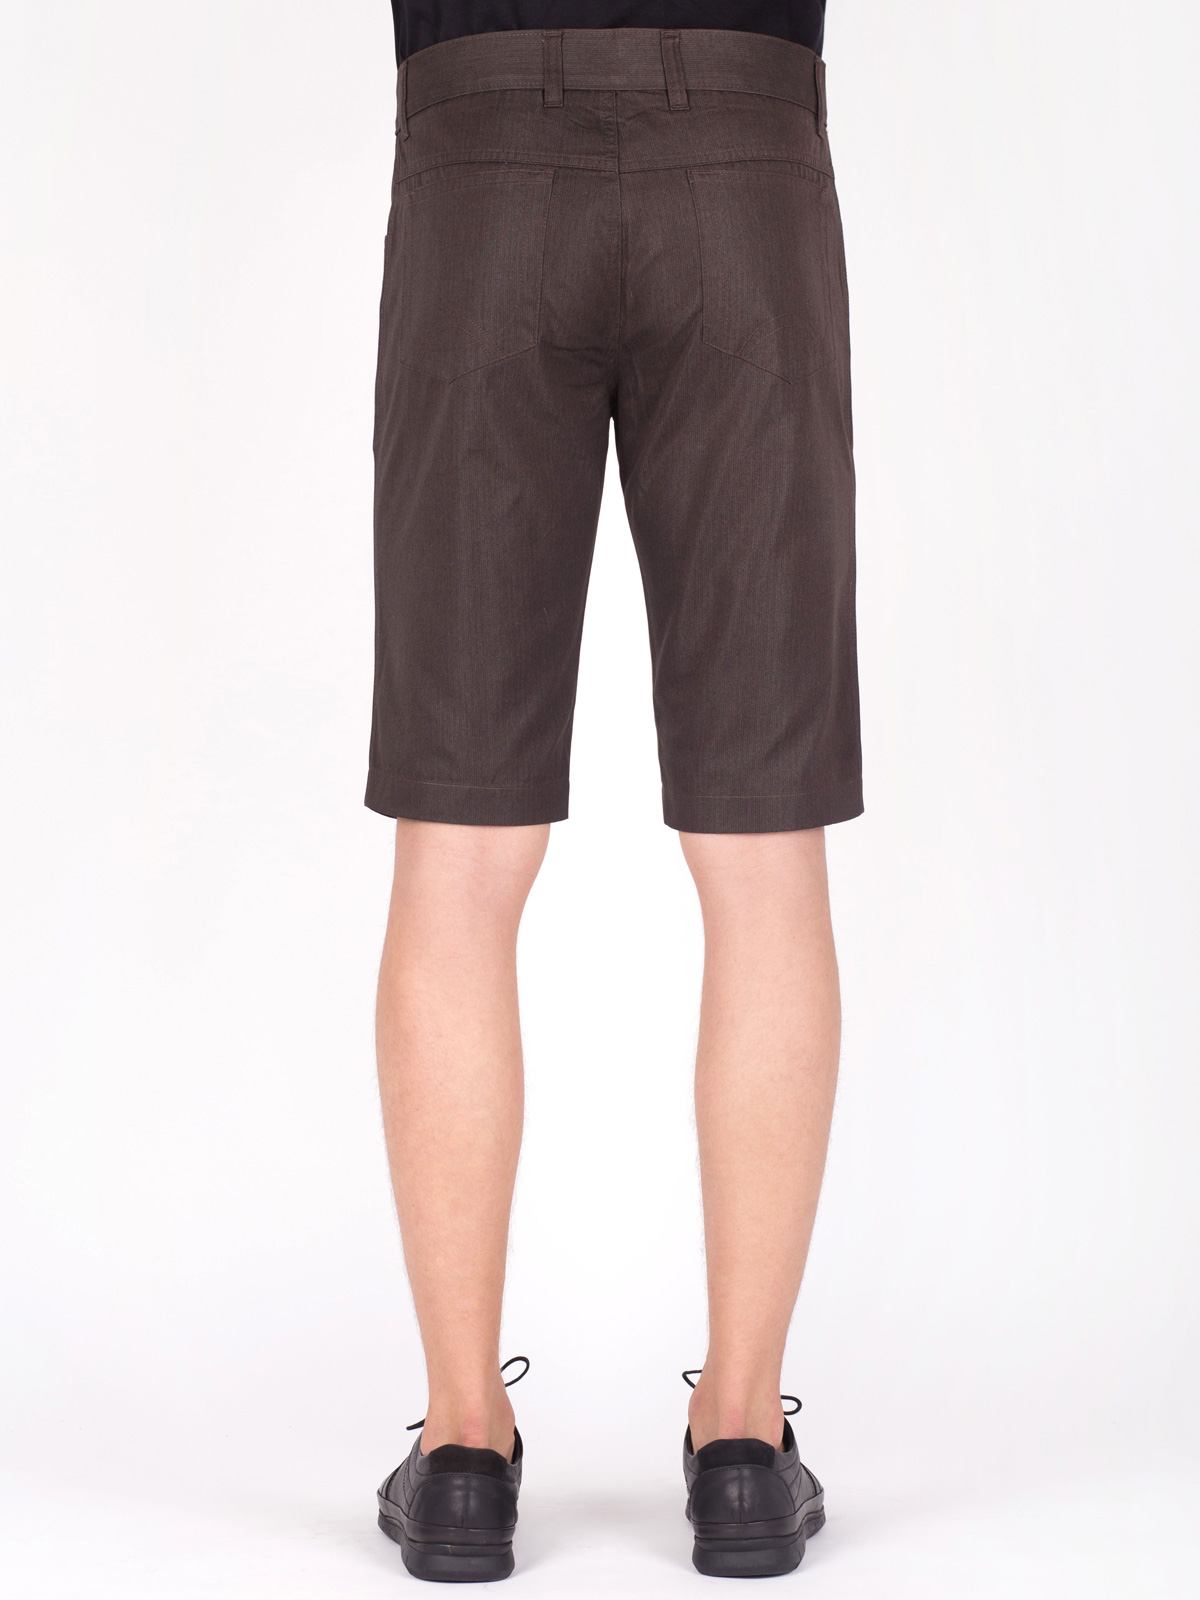  shorts green  brown  - 67013 € 10.69 img3